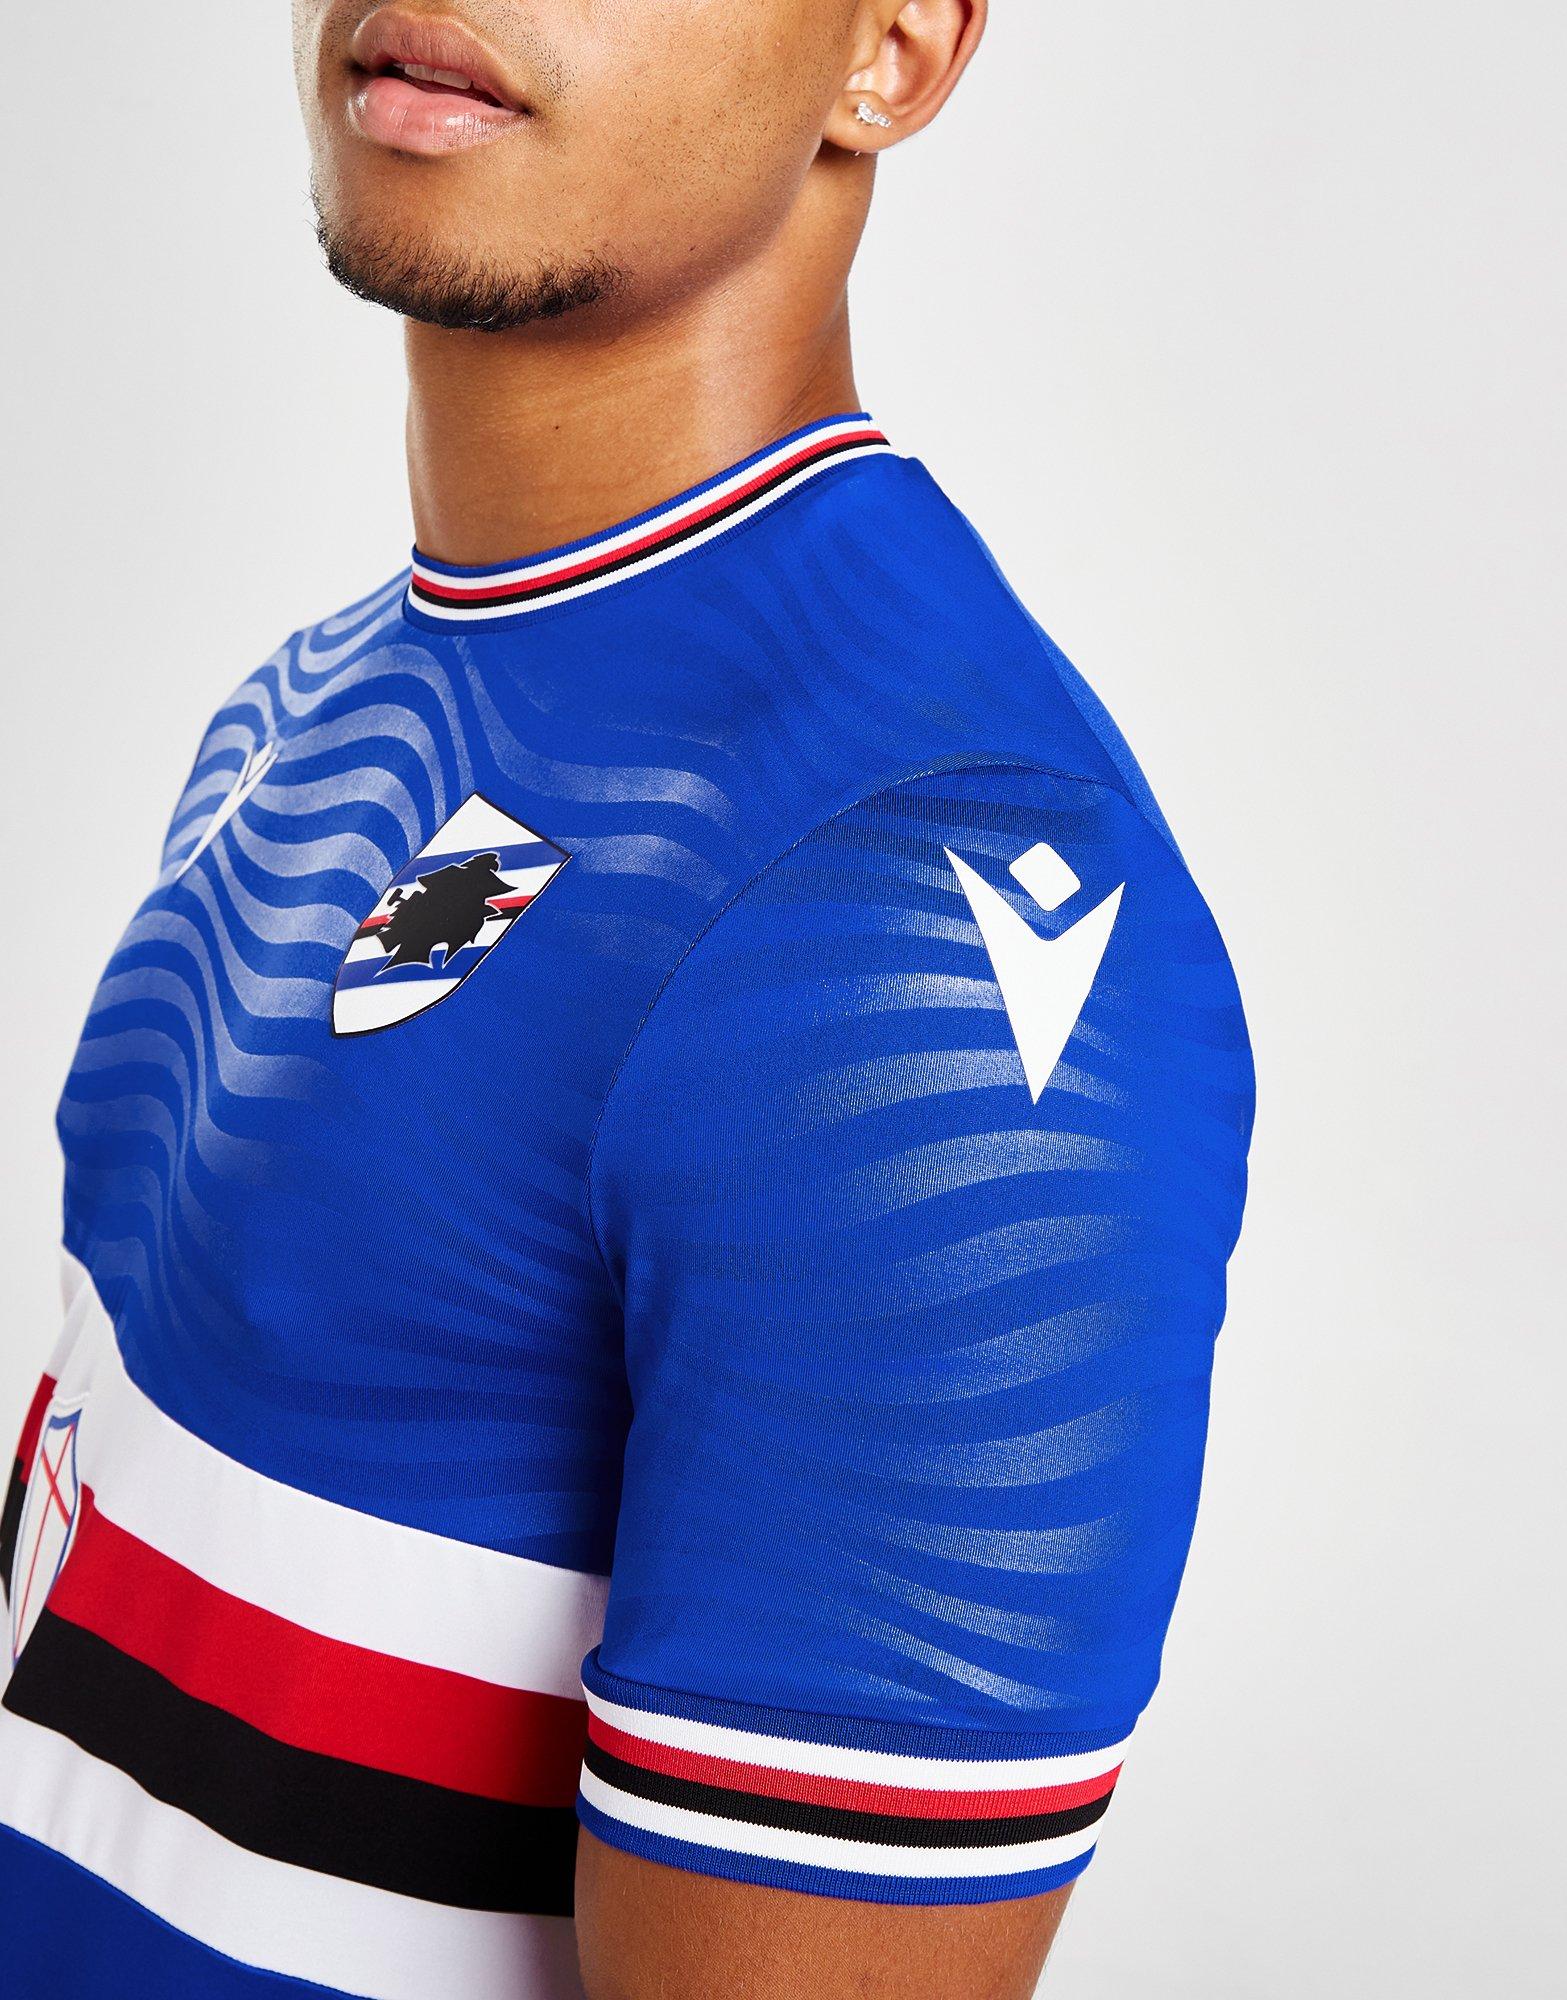 Sampdoria 2022-23 Macron Away Kit - Football Shirt Culture